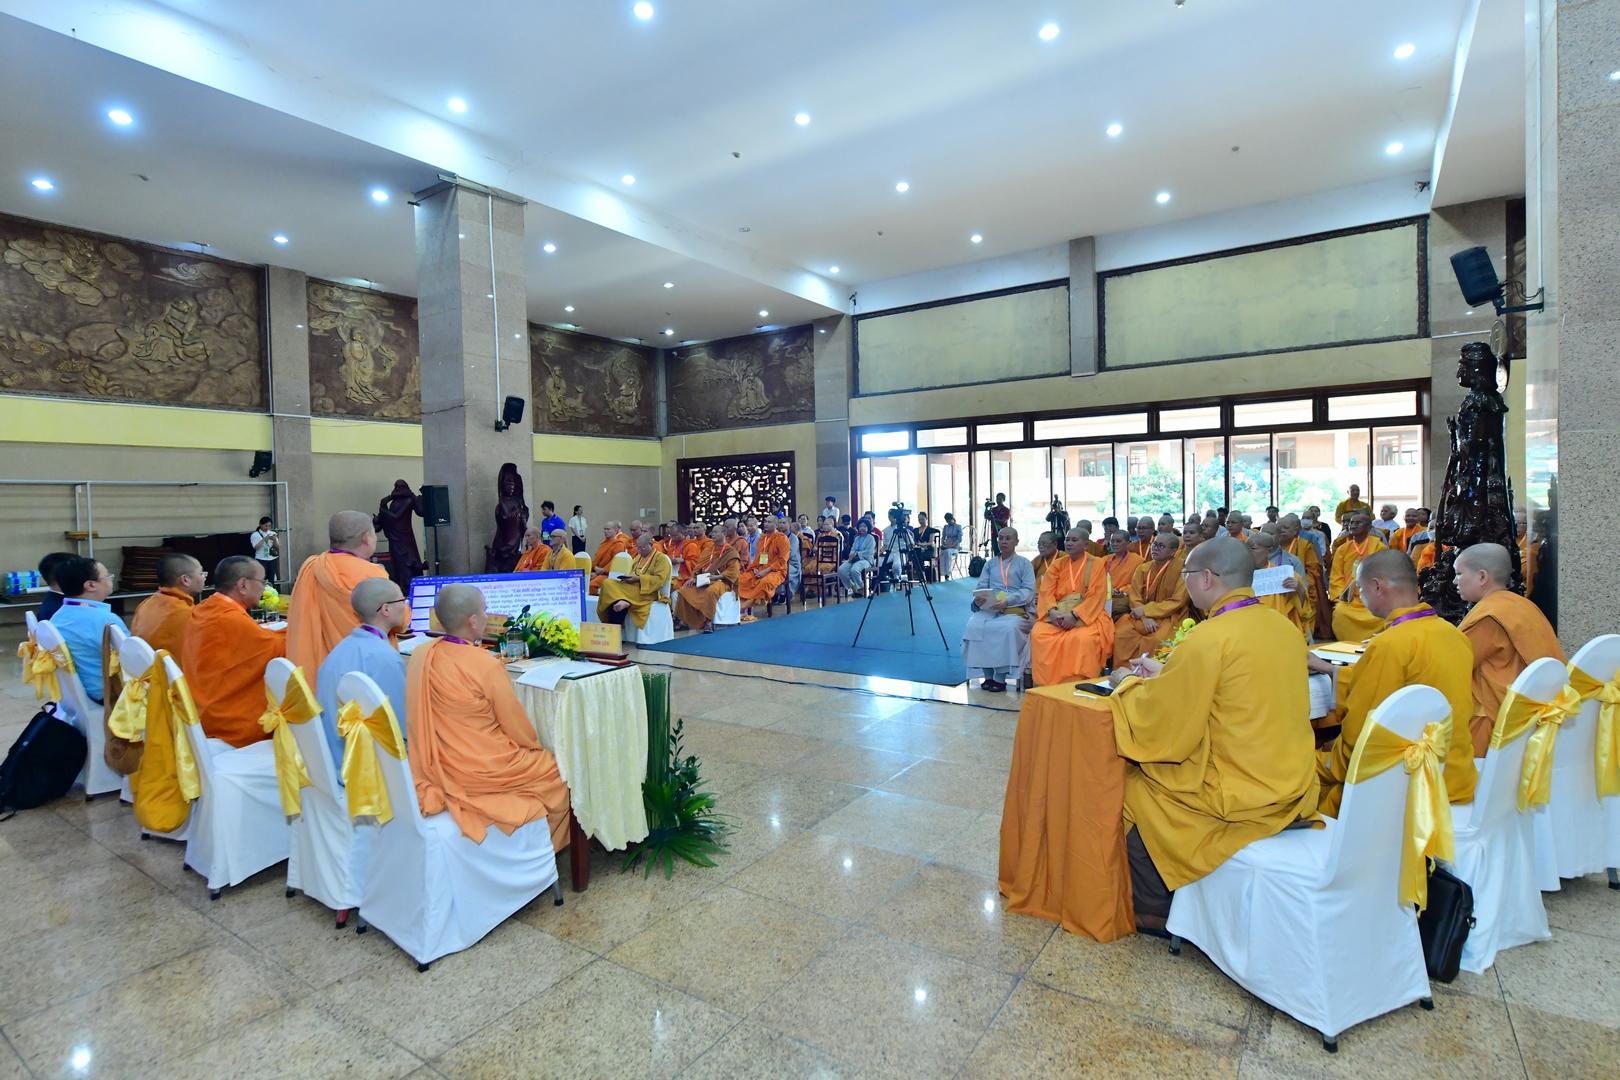 Đa dạng các nội dung tại các Hội thảo Hệ phái Khất sĩ Tư tưởng Phật học, lịch sử truyền thừa và những đóng góp